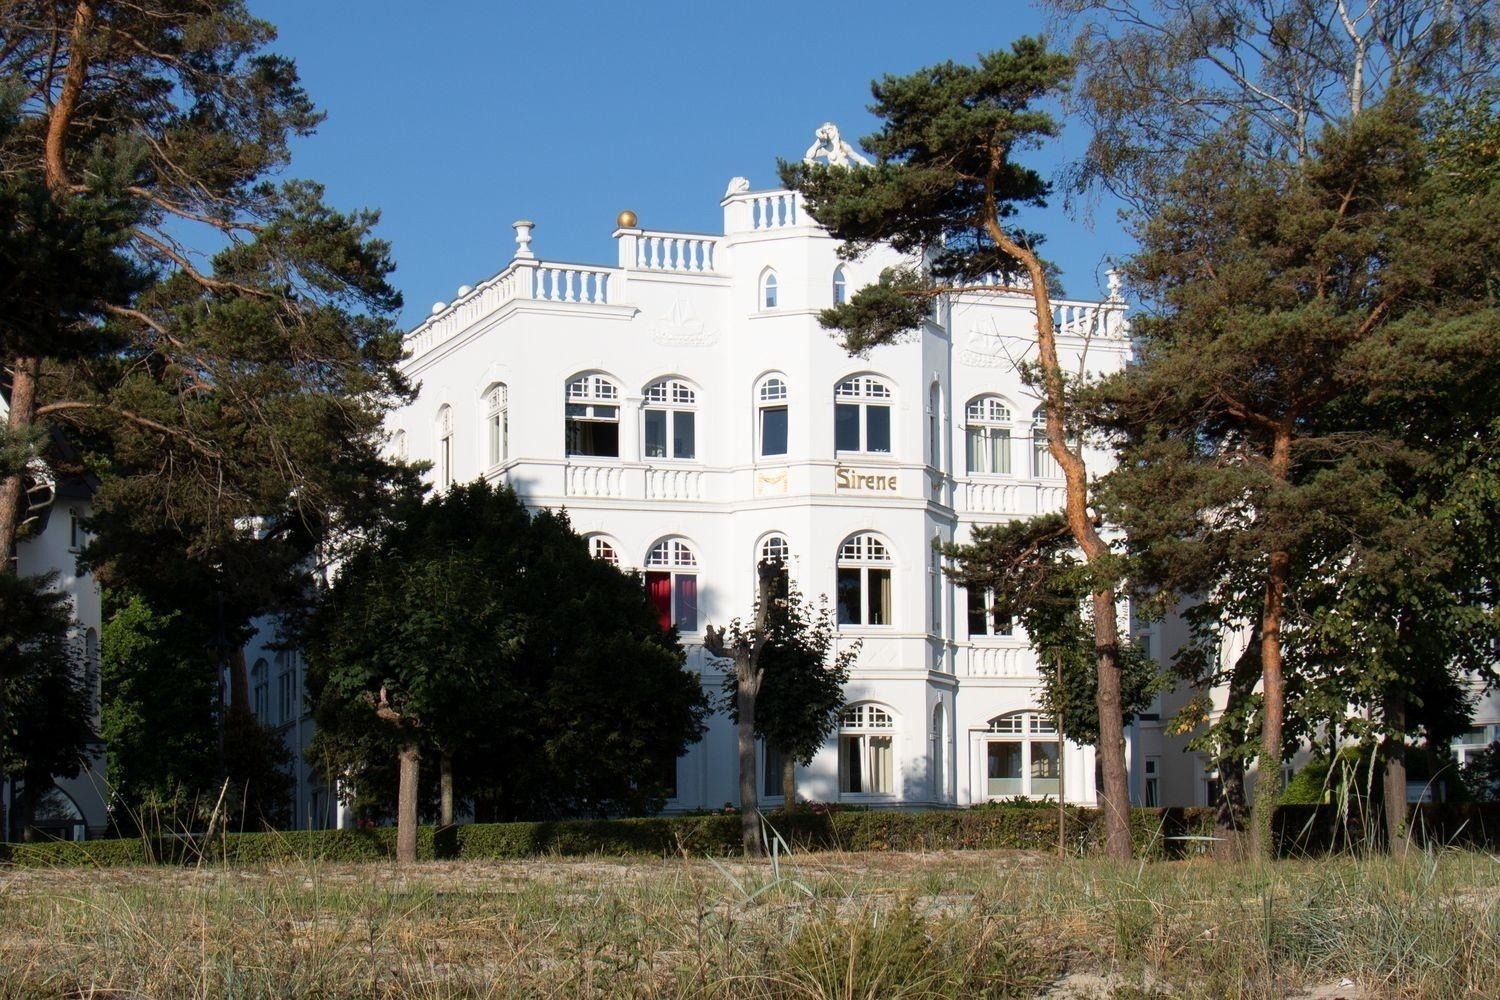 Villa Sirene 2-Raum Apartment, ca. 54 qm Ferienwohnung auf Rügen